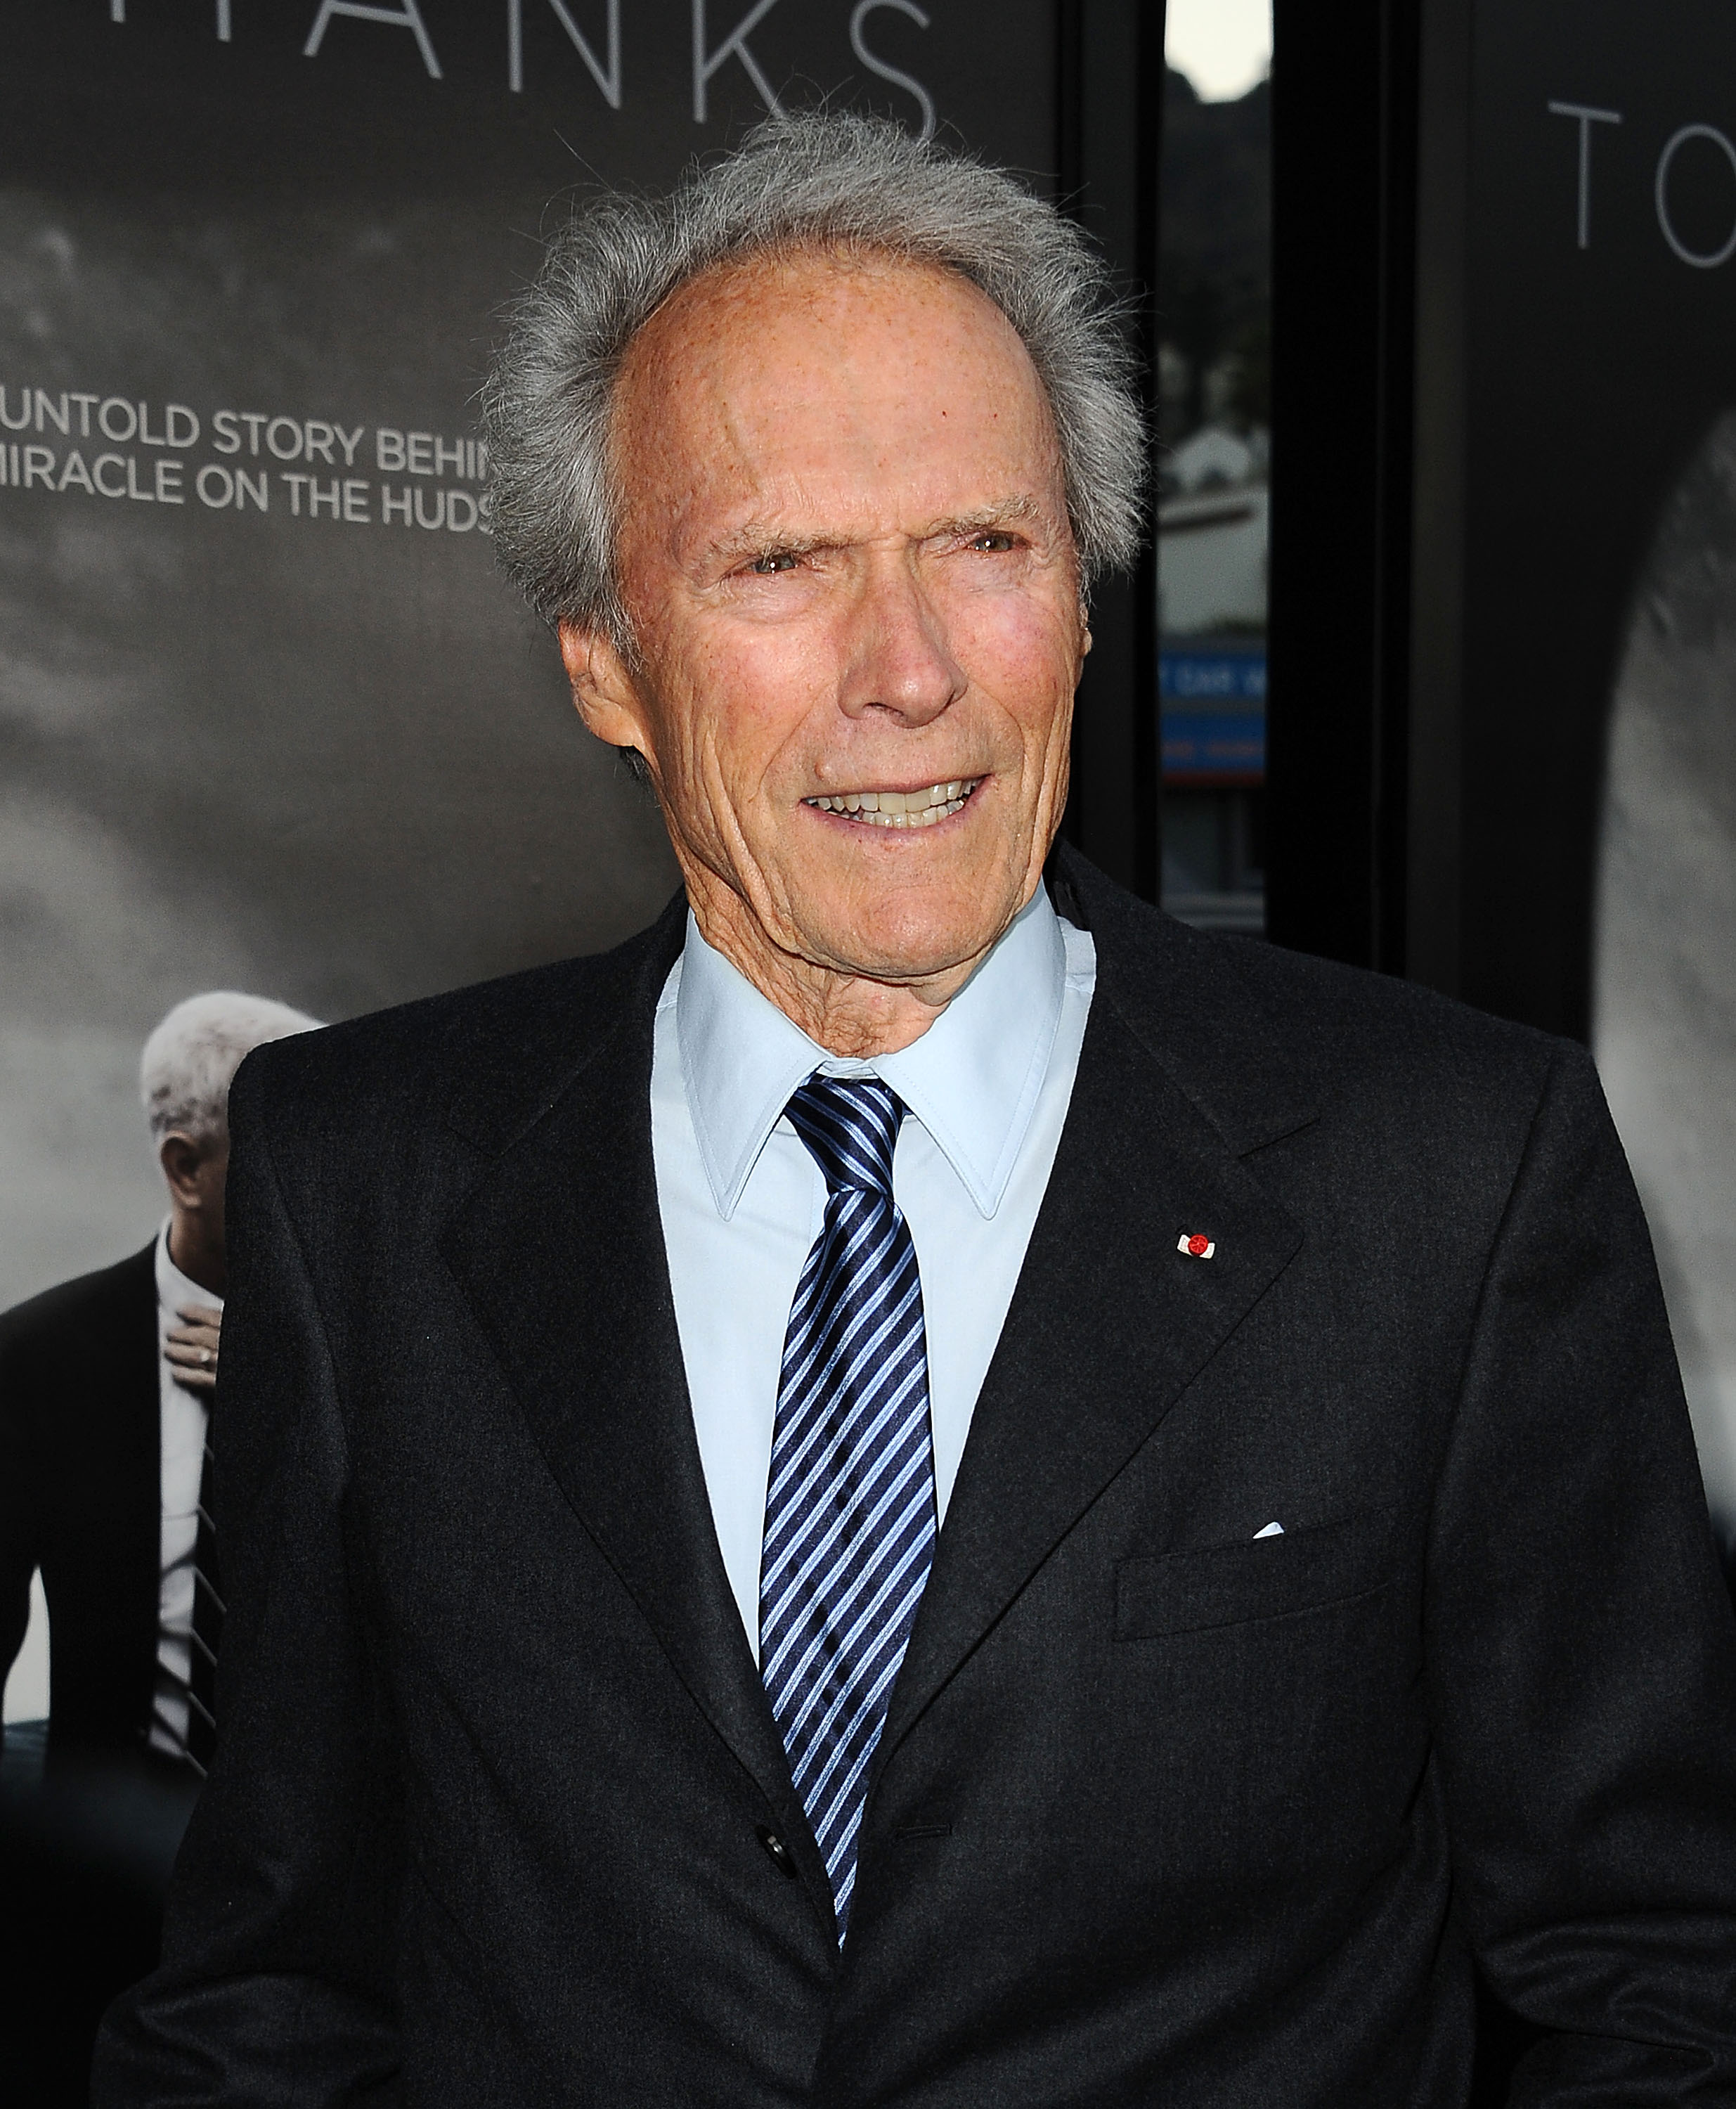 Clint Eastwood asiste a una proyección de "Sully" en el Directors Guild Of America en Los Ángeles, California, el 8 de septiembre de 2016. | Fuente: Getty Images